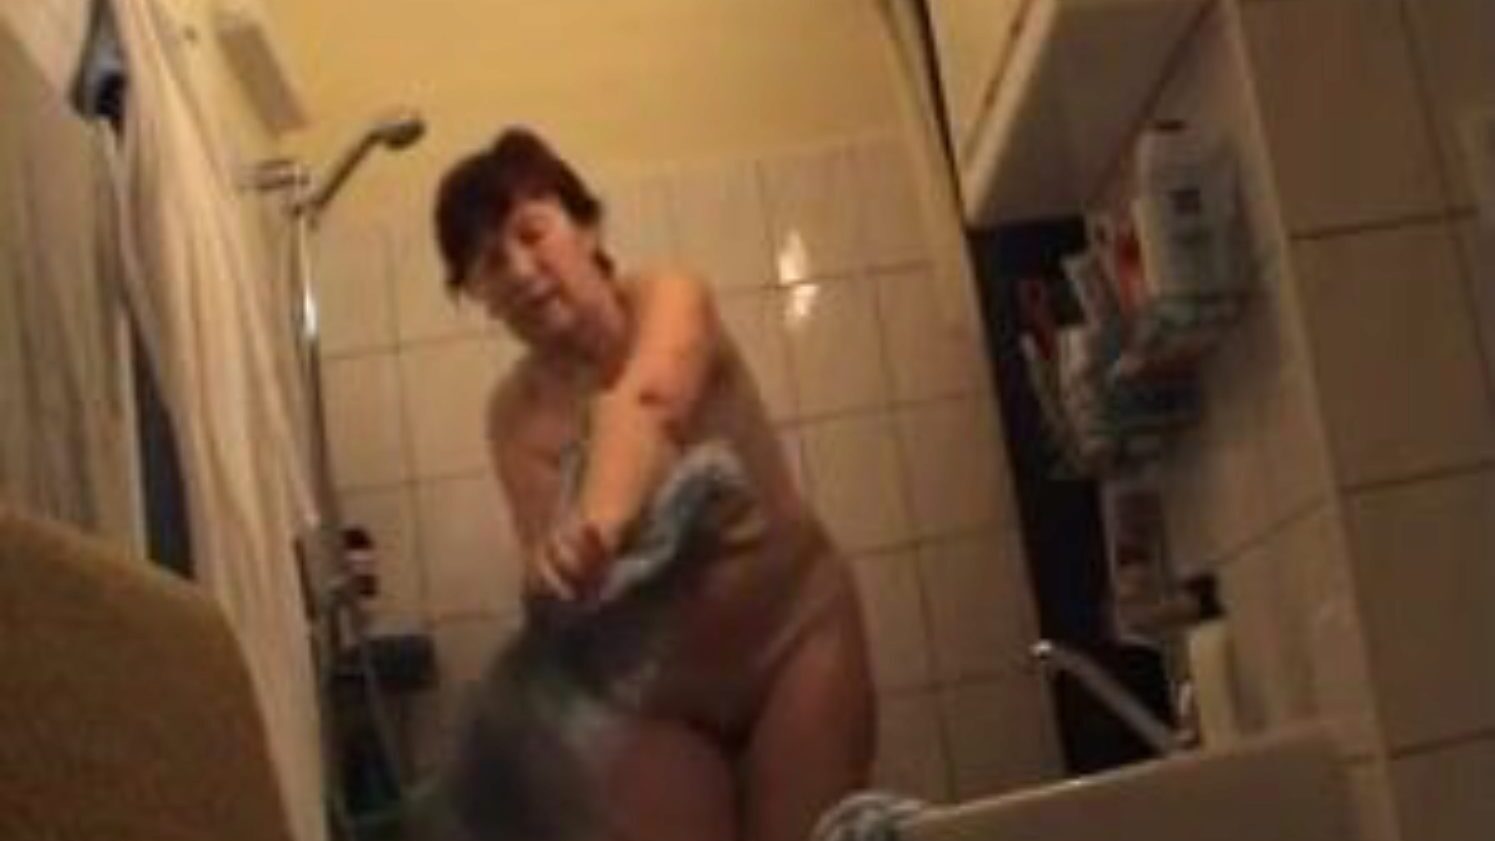 bunicuță germană nud în baie, anunț gratuit video porno germani vizionați scena bunică germană bunicuță nudă în baie pe xhamster, cel mai mare site de sex tube cu tone de bunicuțe goale germane gratuite și video porno mature